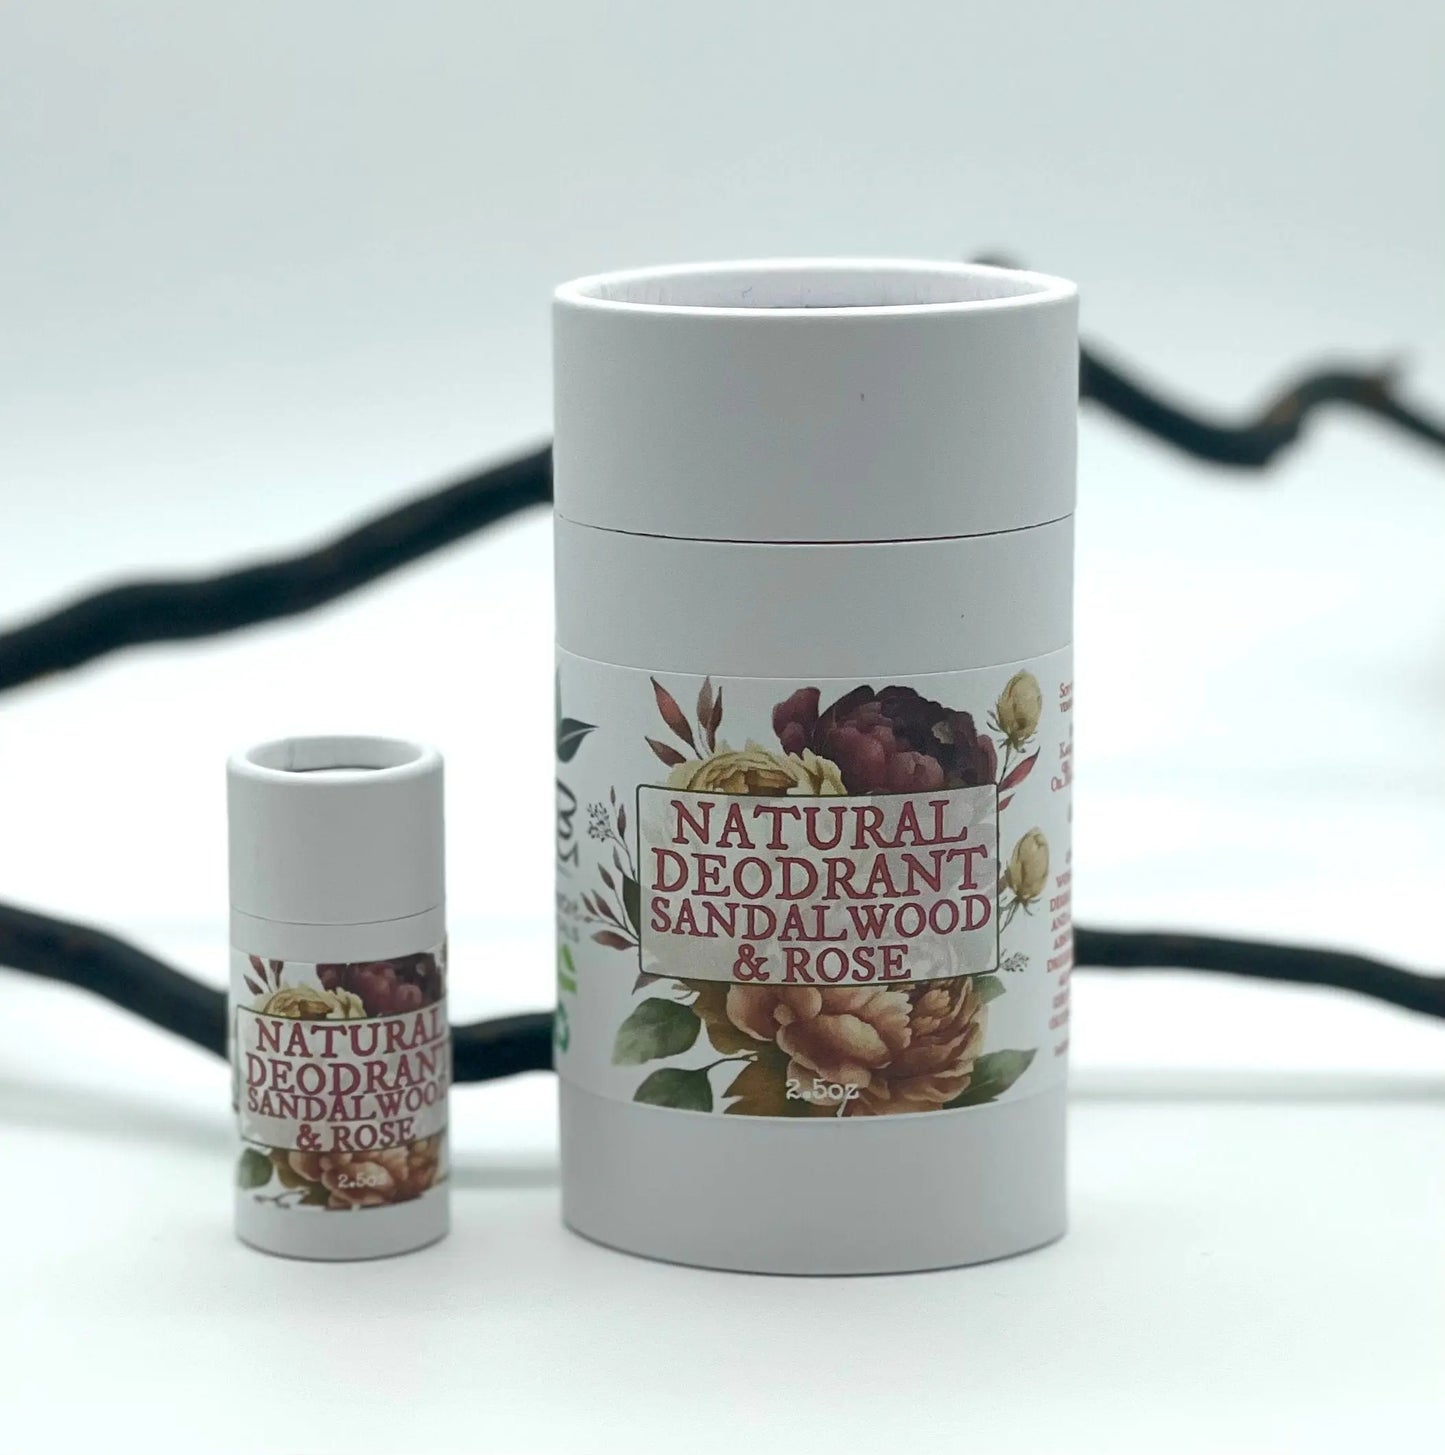 Sandalwood Rose Natural Deodorant for sensitive skin